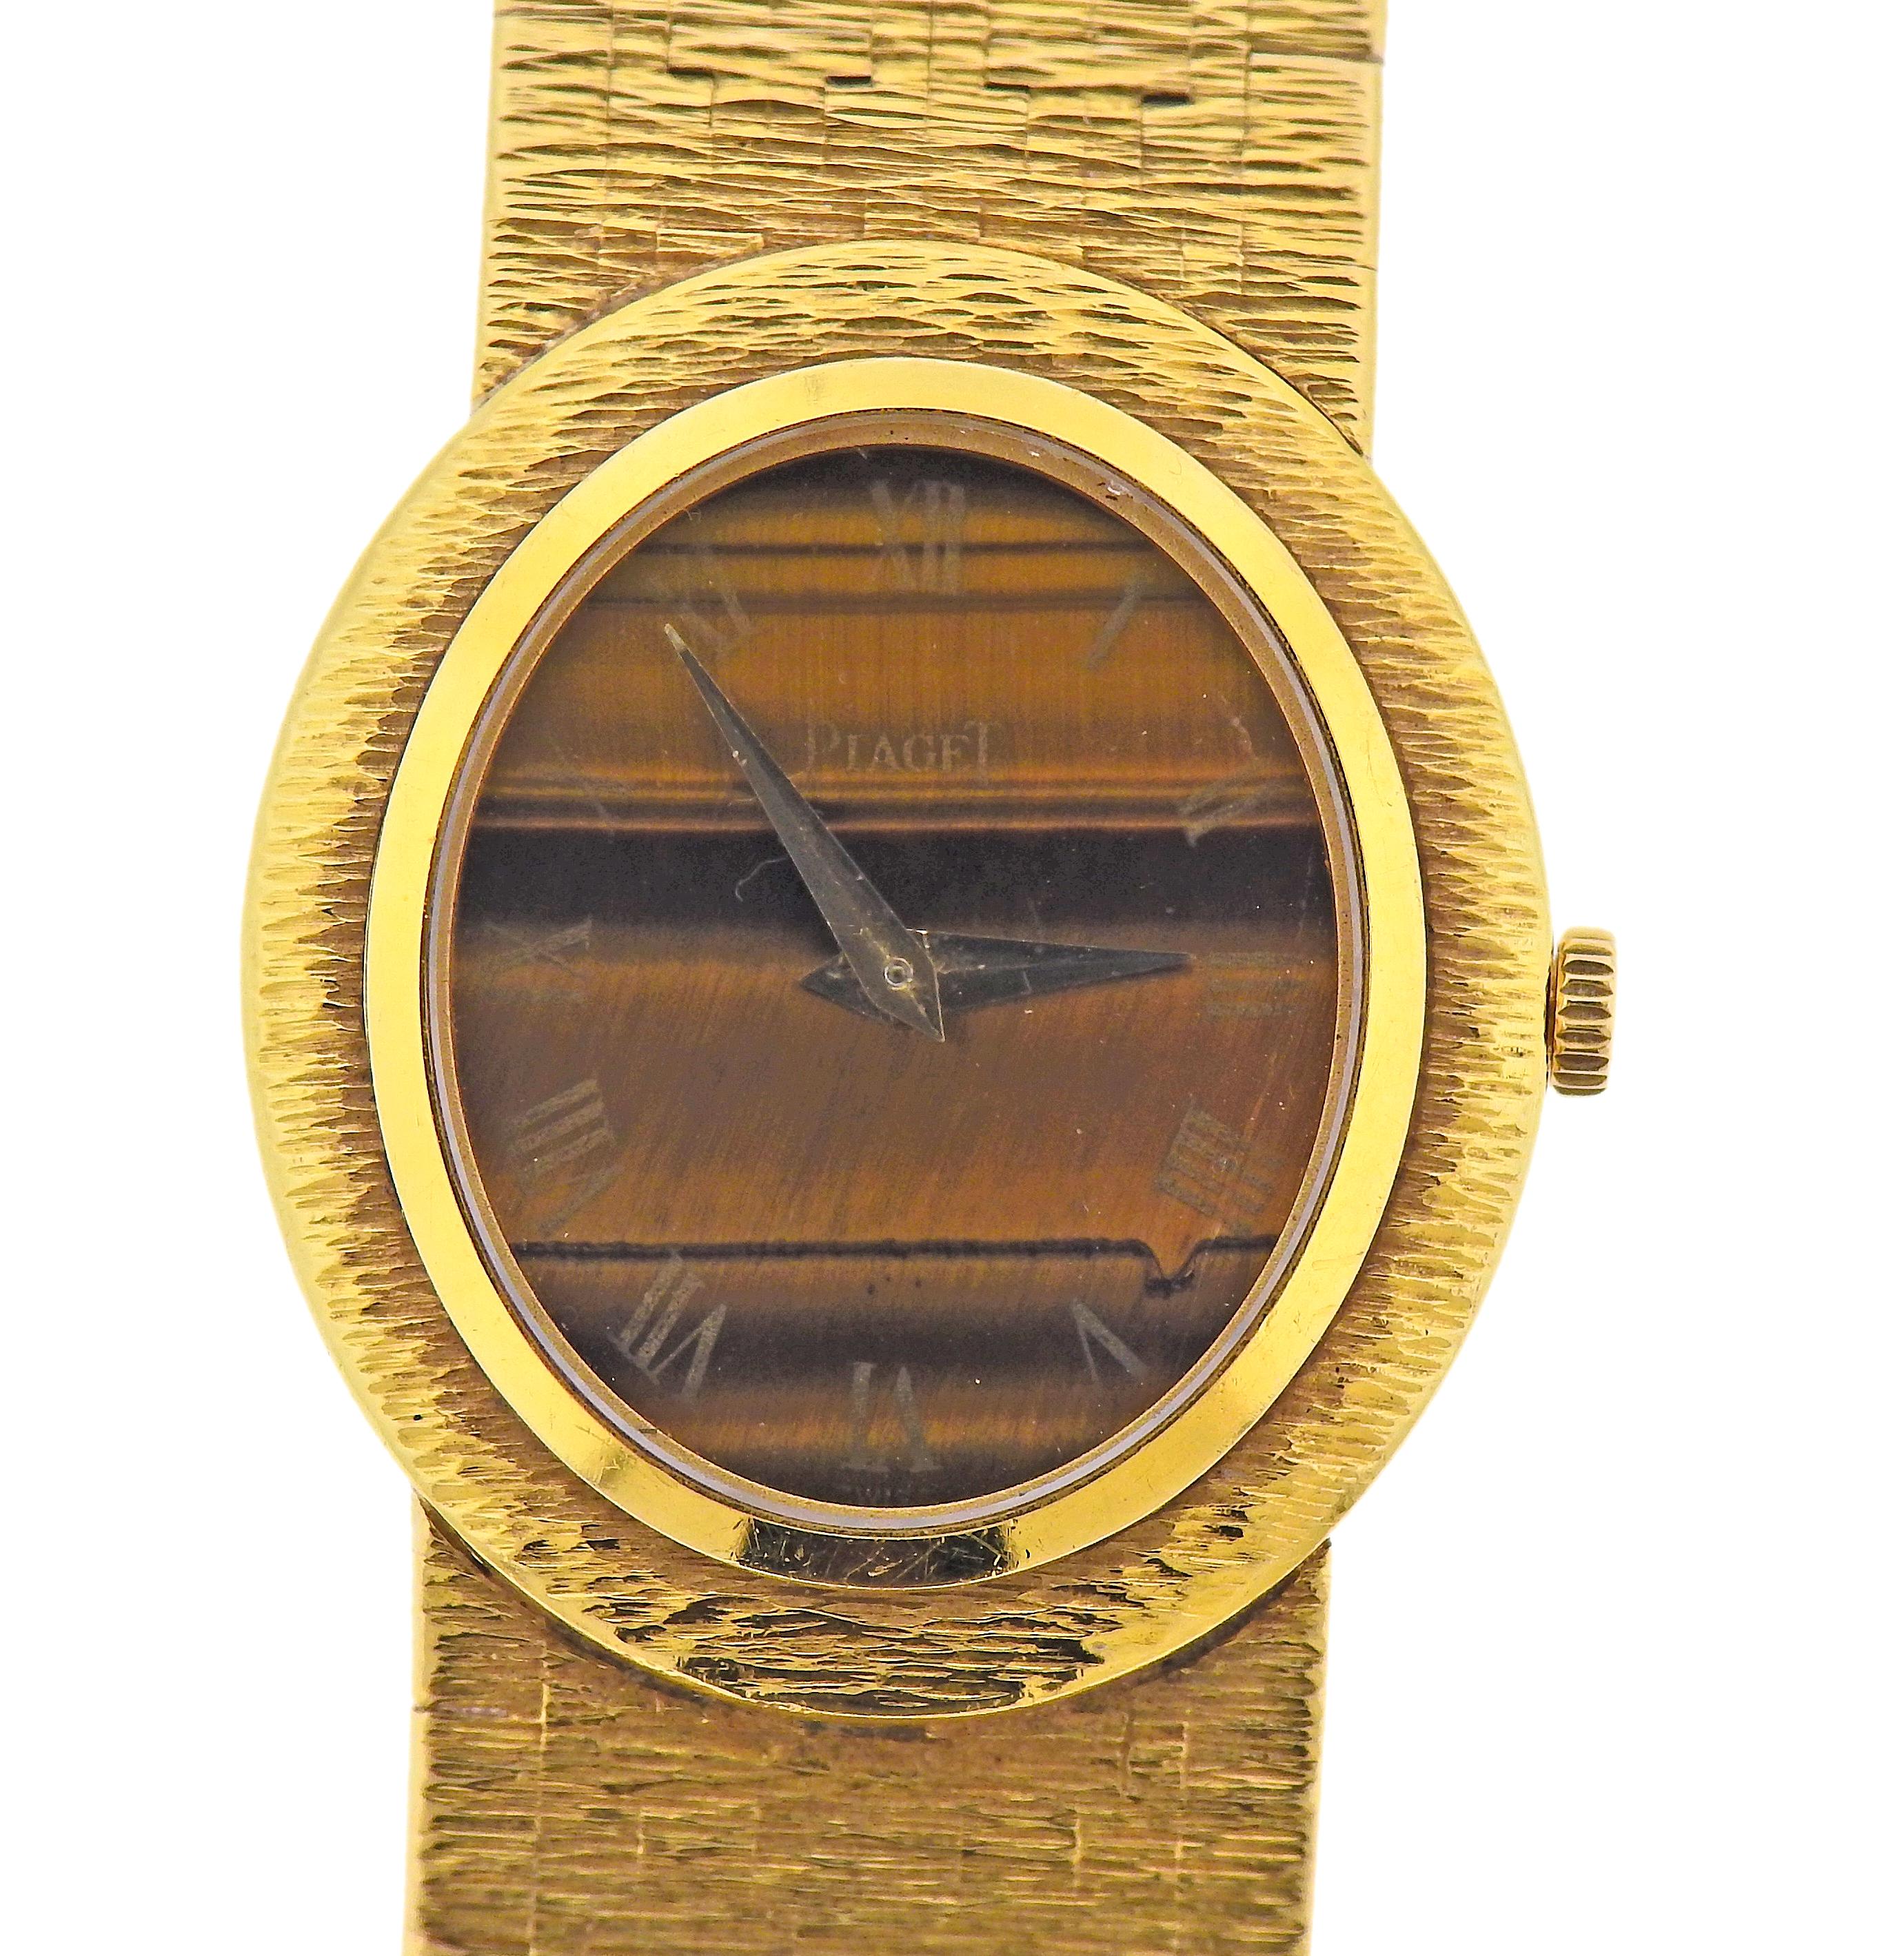 Uhr von Piaget, 18 Karat Gelbgold, ovales Gehäuse, Zifferblatt mit Tigerauge, römische Ziffern. Das Gehäuse ist 24mm exkl. Krone x 27mm. Das Armband ist 6,25